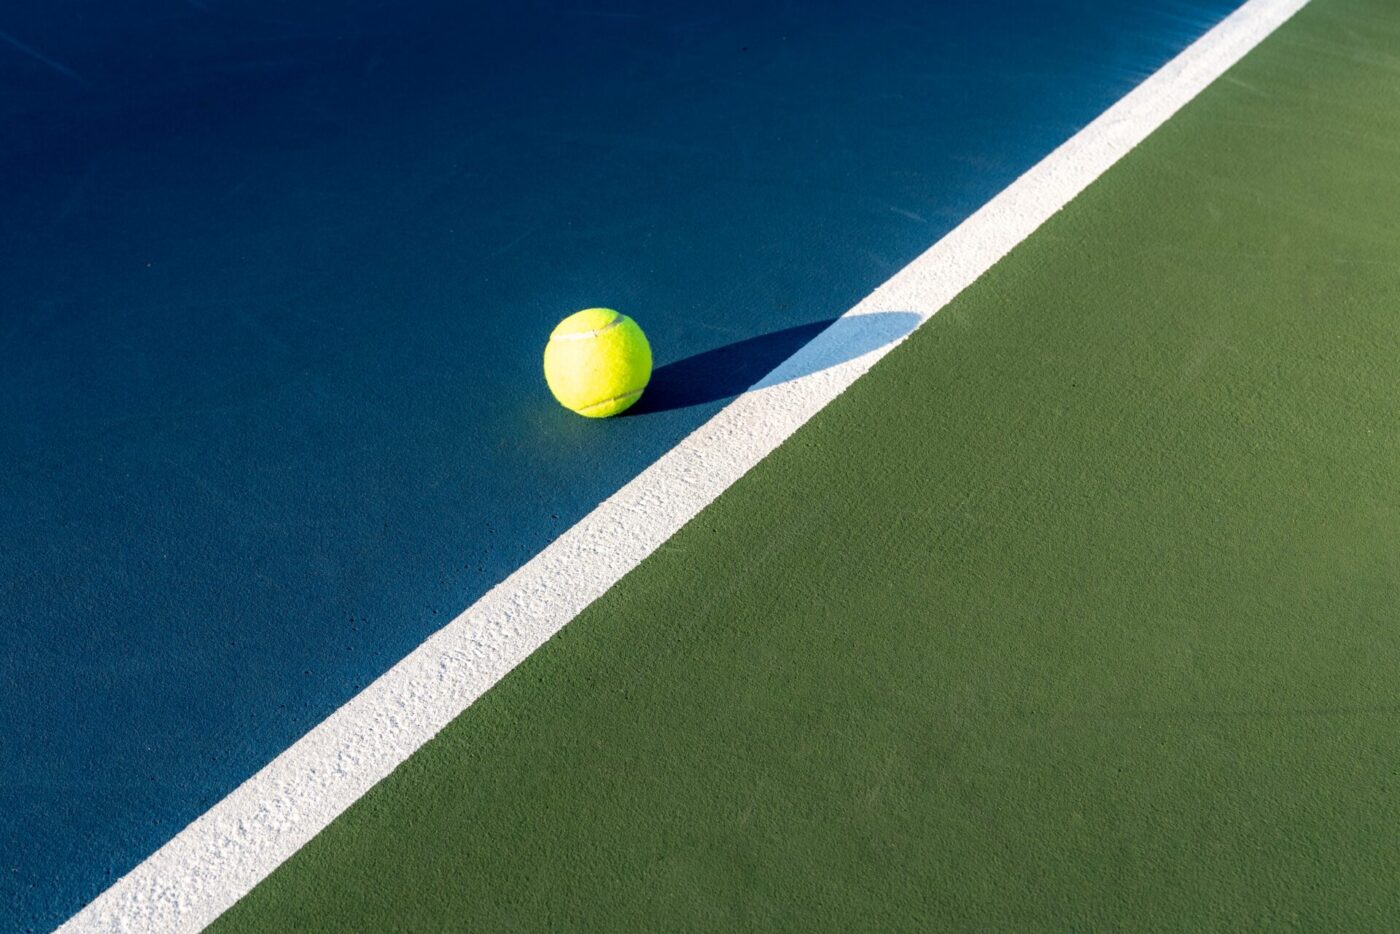 Teniszlabda, fehér vonalon kék mezőben, kötelmi jog